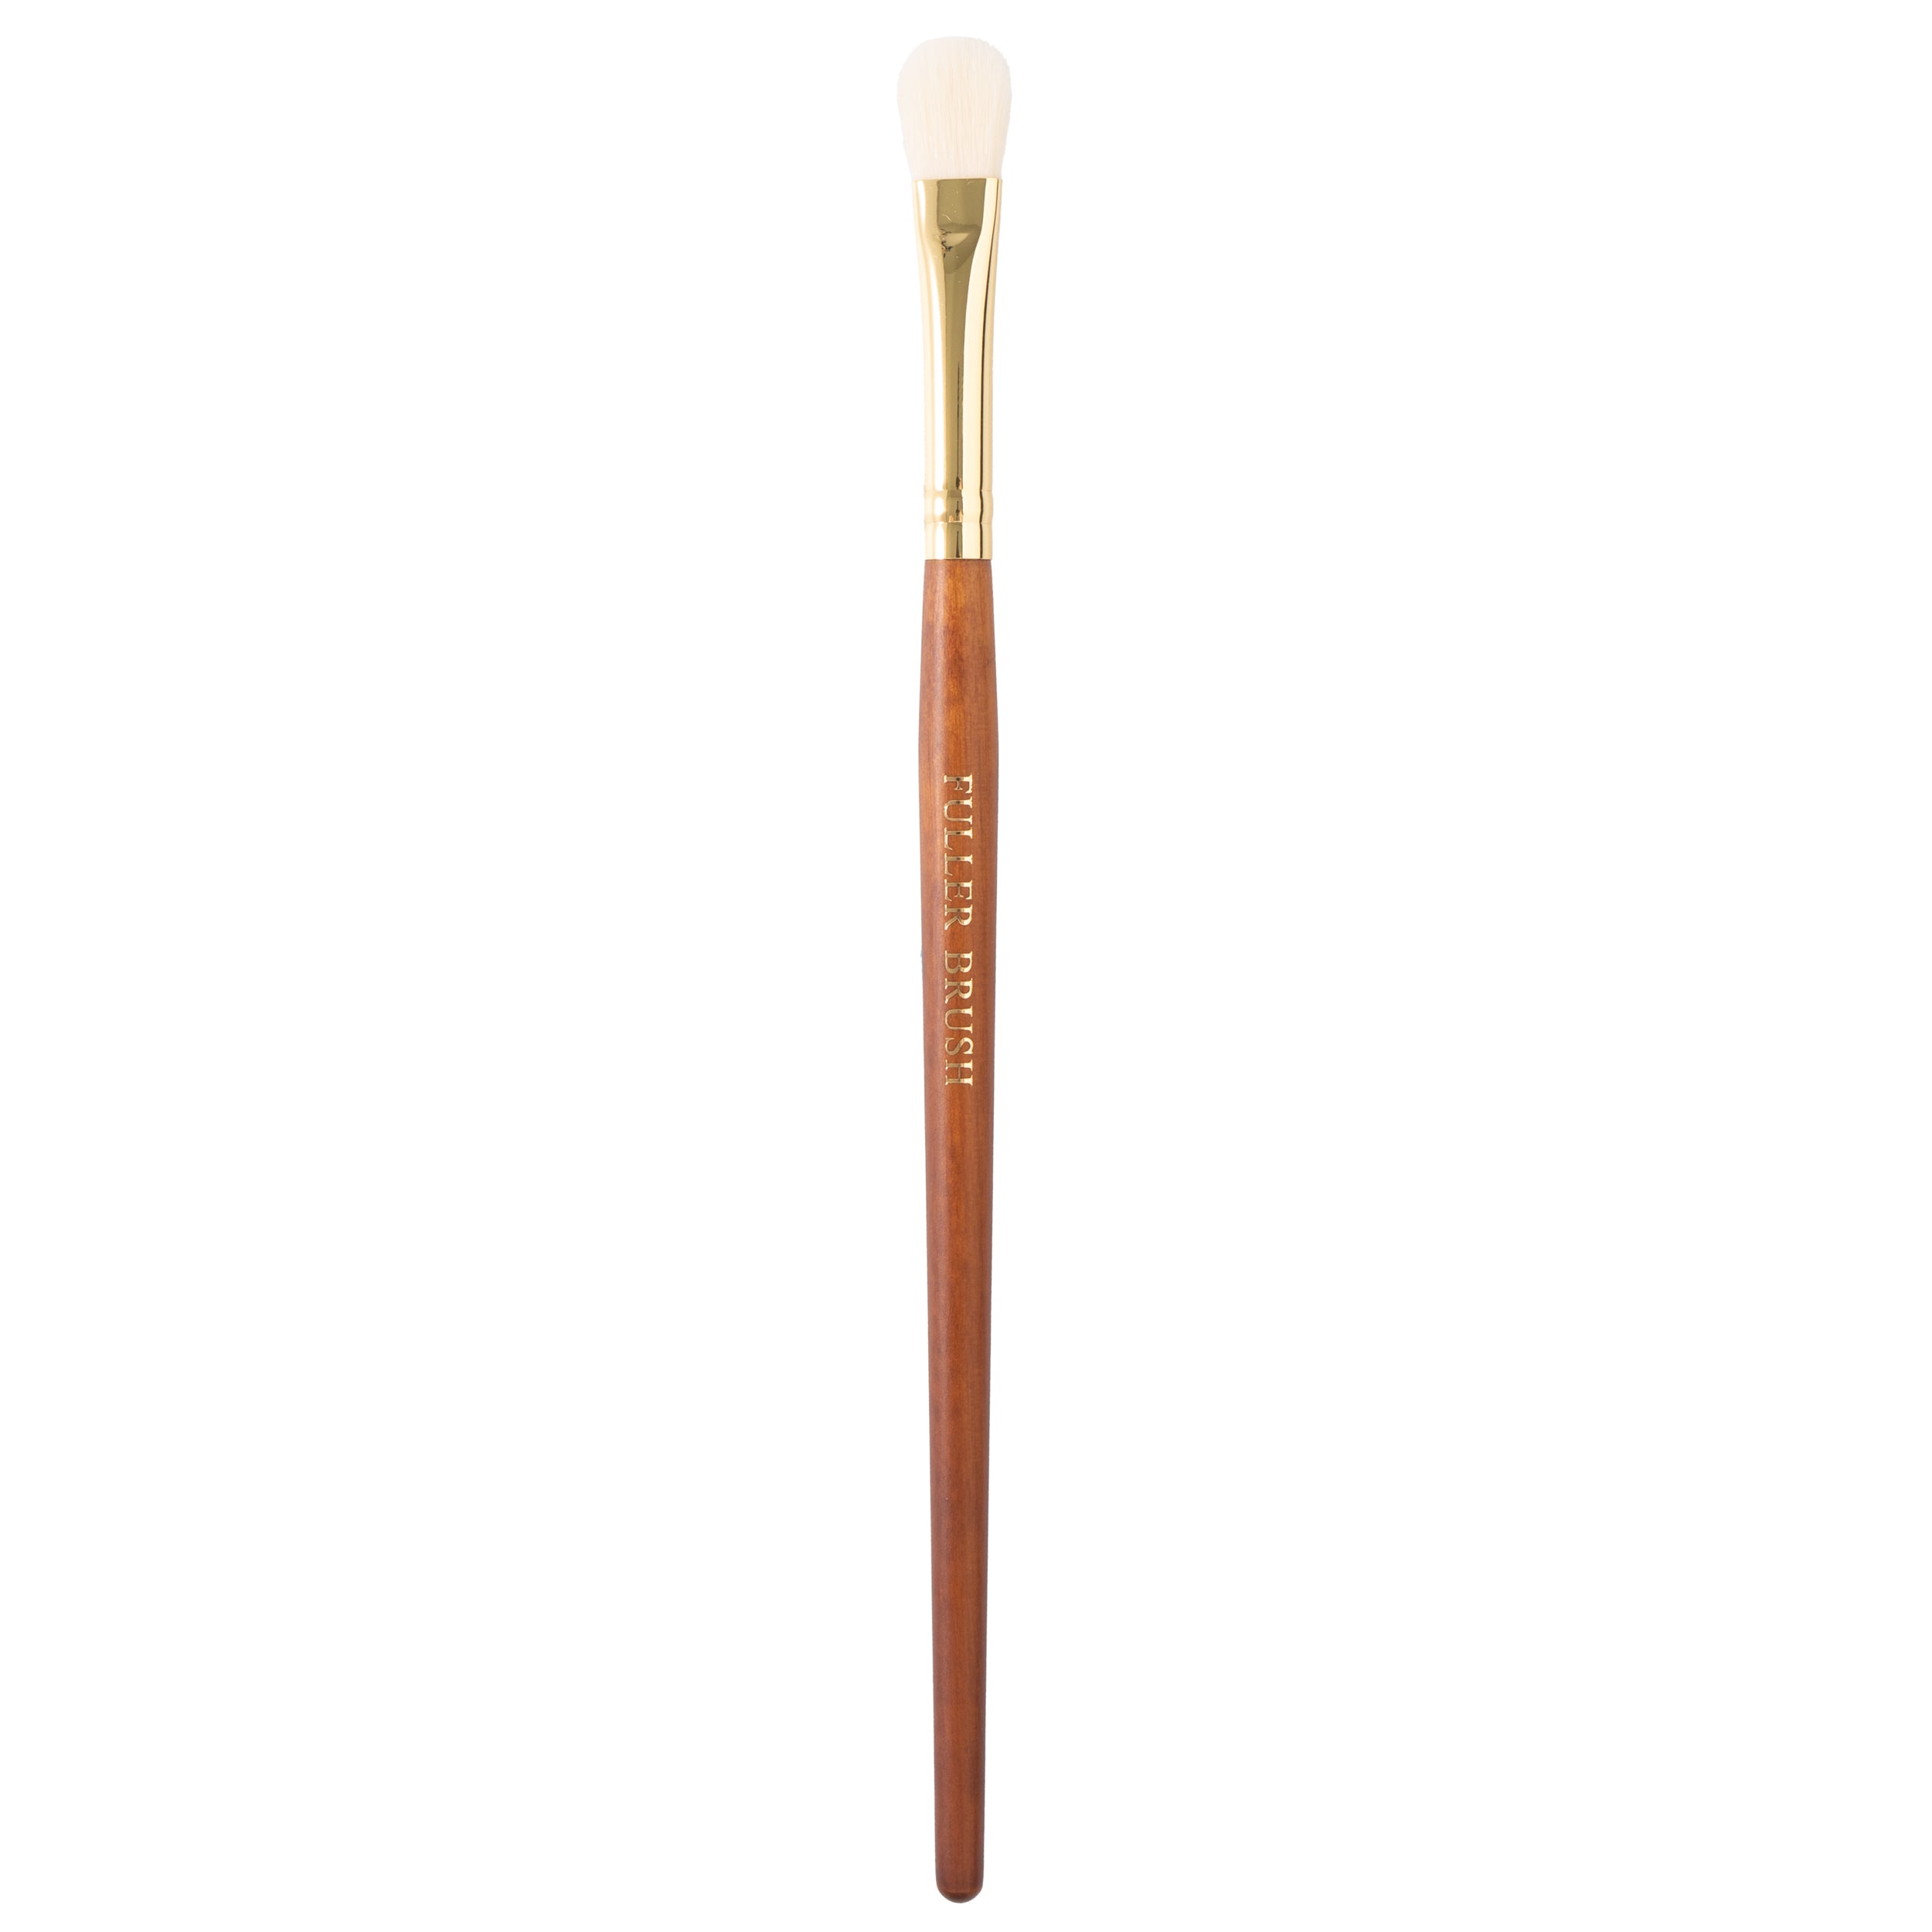 Fuller Cosmetic Blending Brush #569